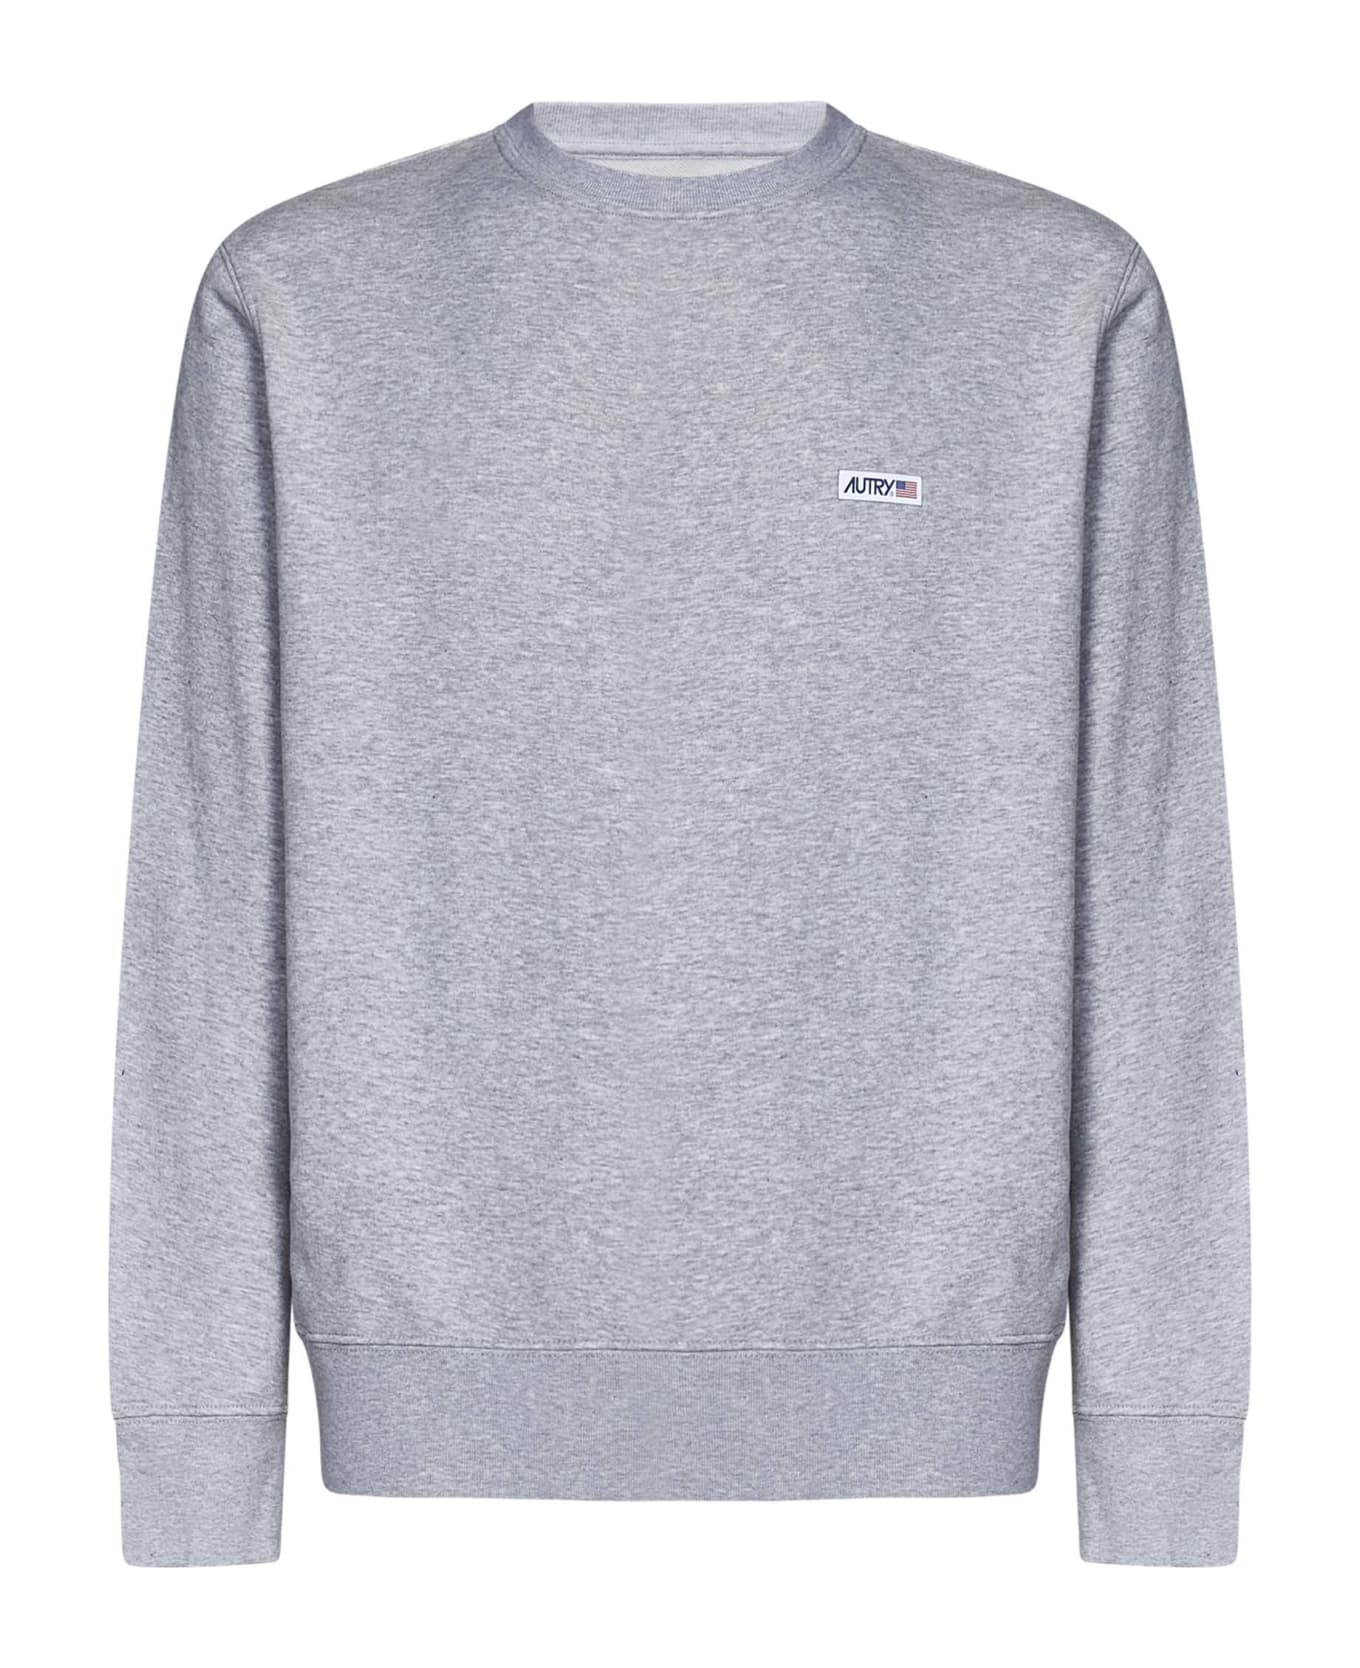 Autry Sweatshirt - Grey